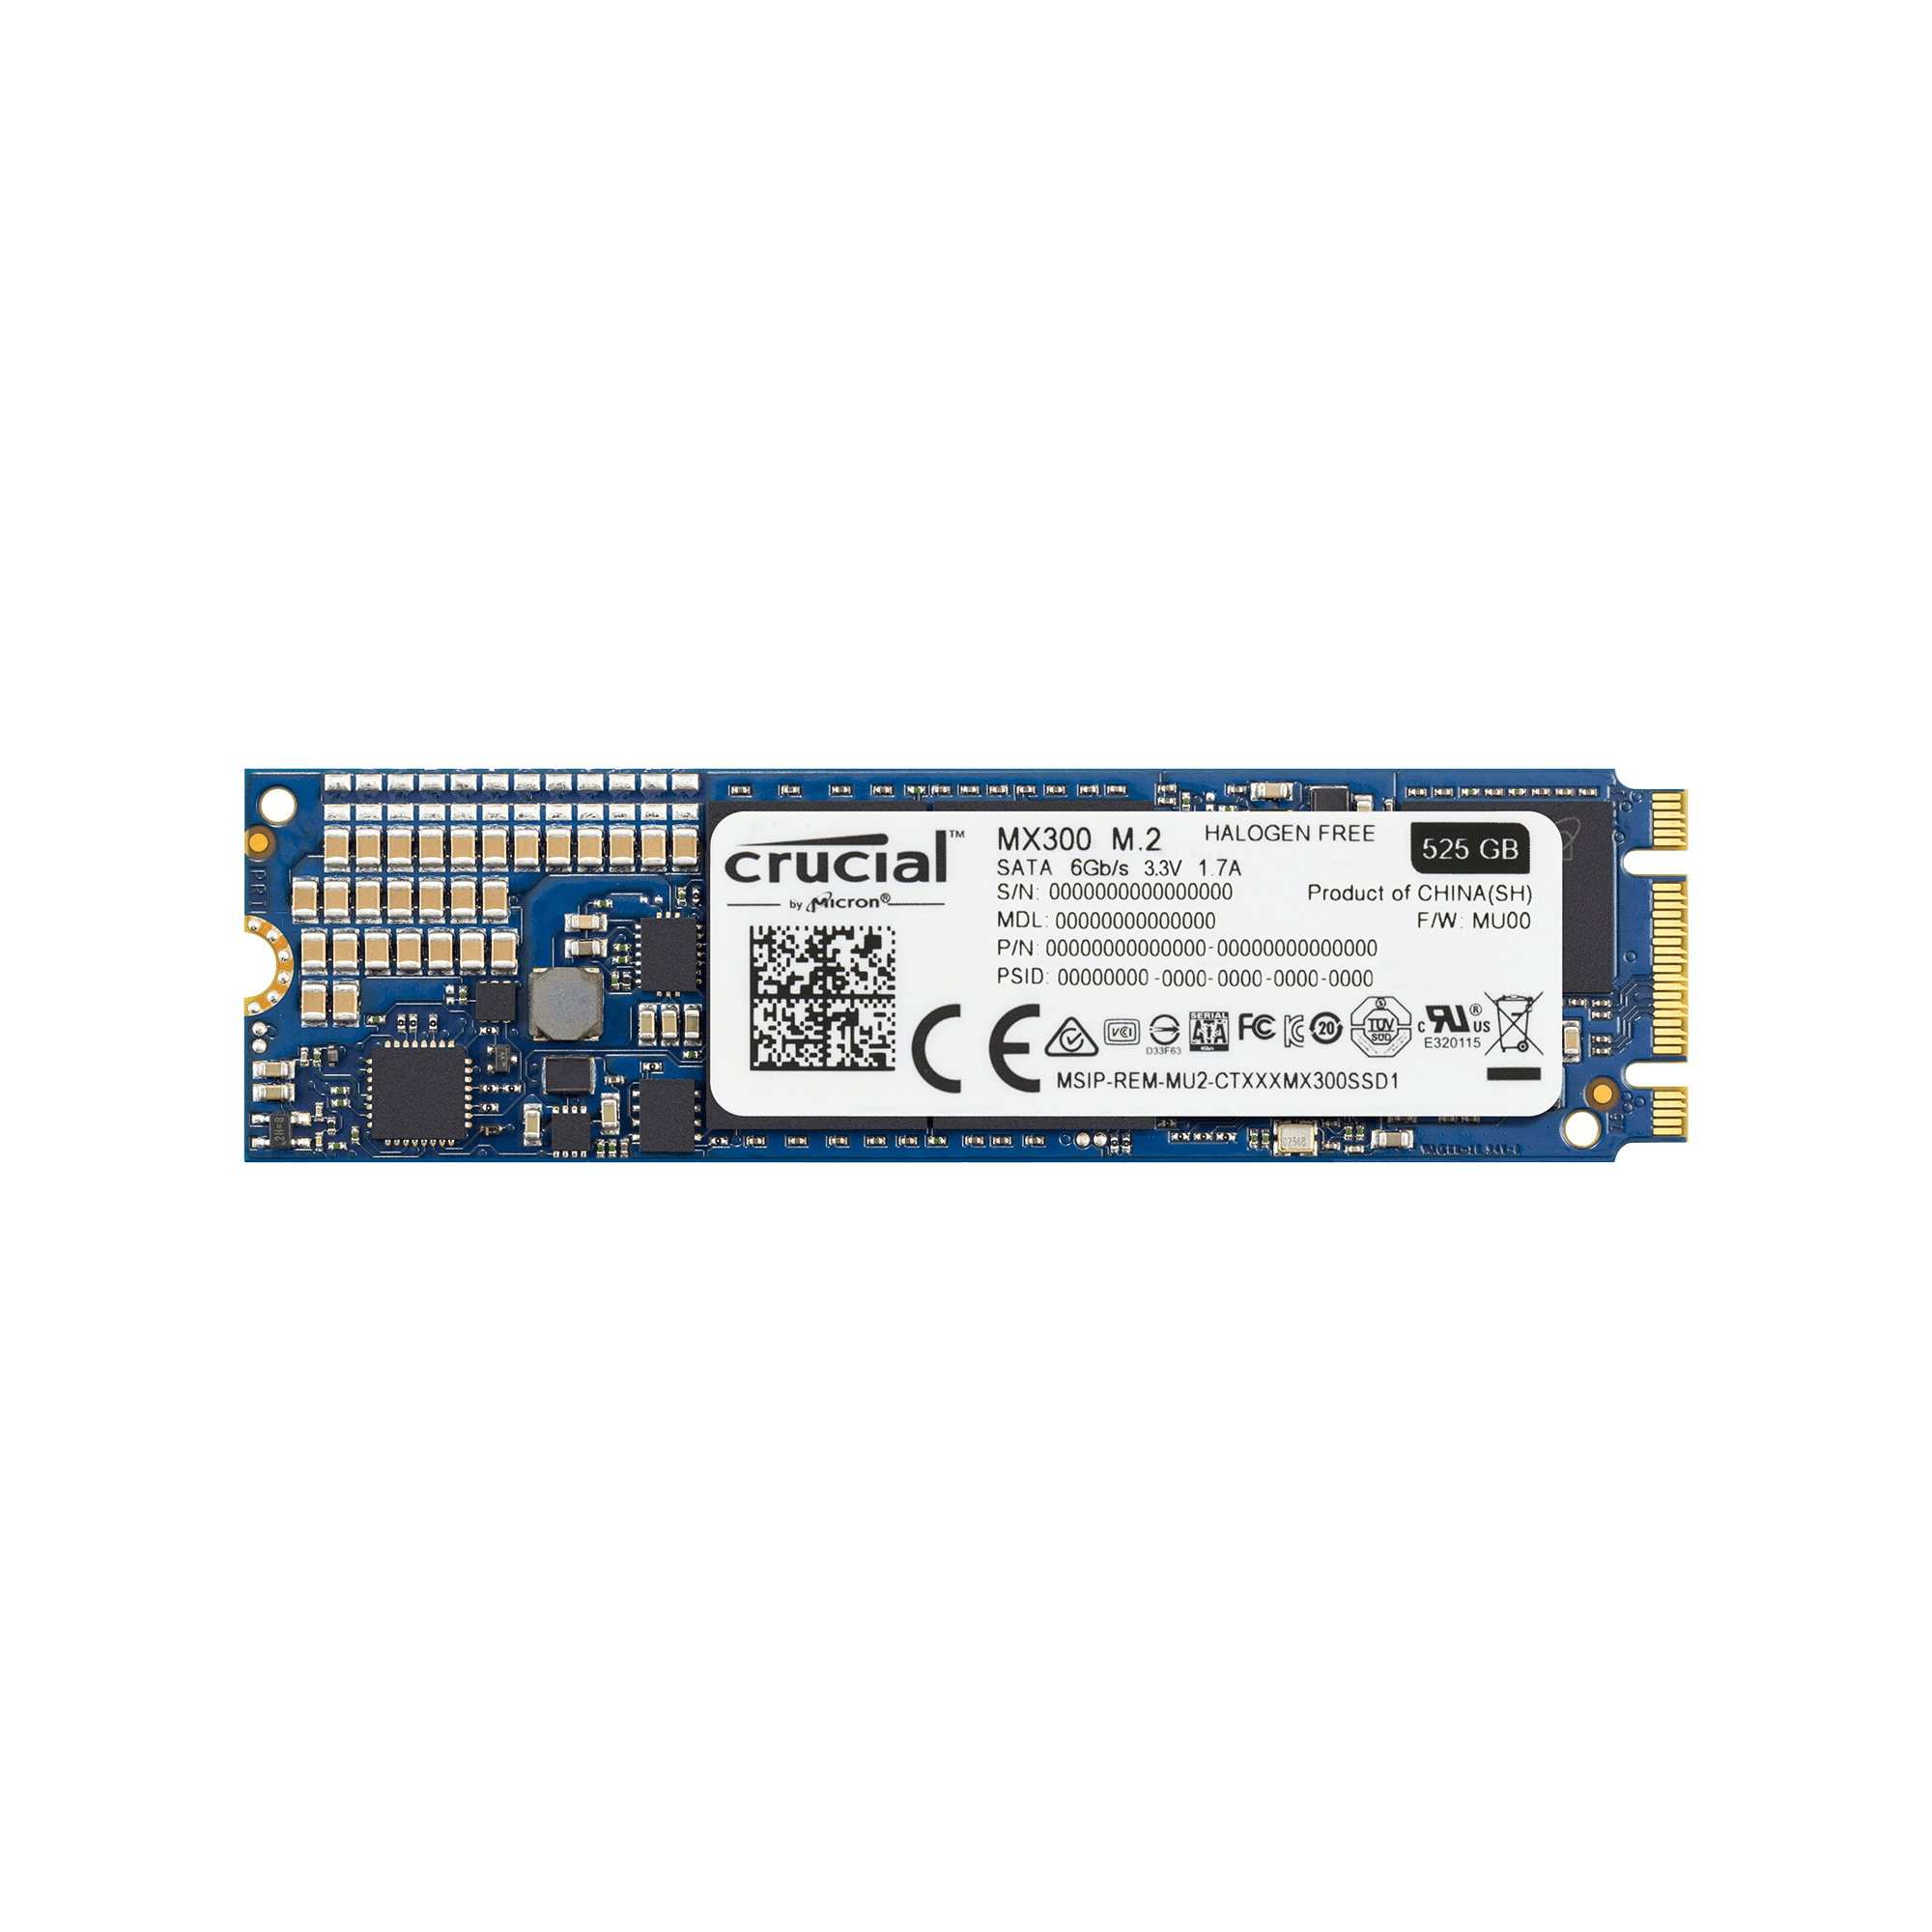 CT525MX300SSD4/JP | Crucial MX300 シリーズ M.2 SSD (525GB) | CFD ...